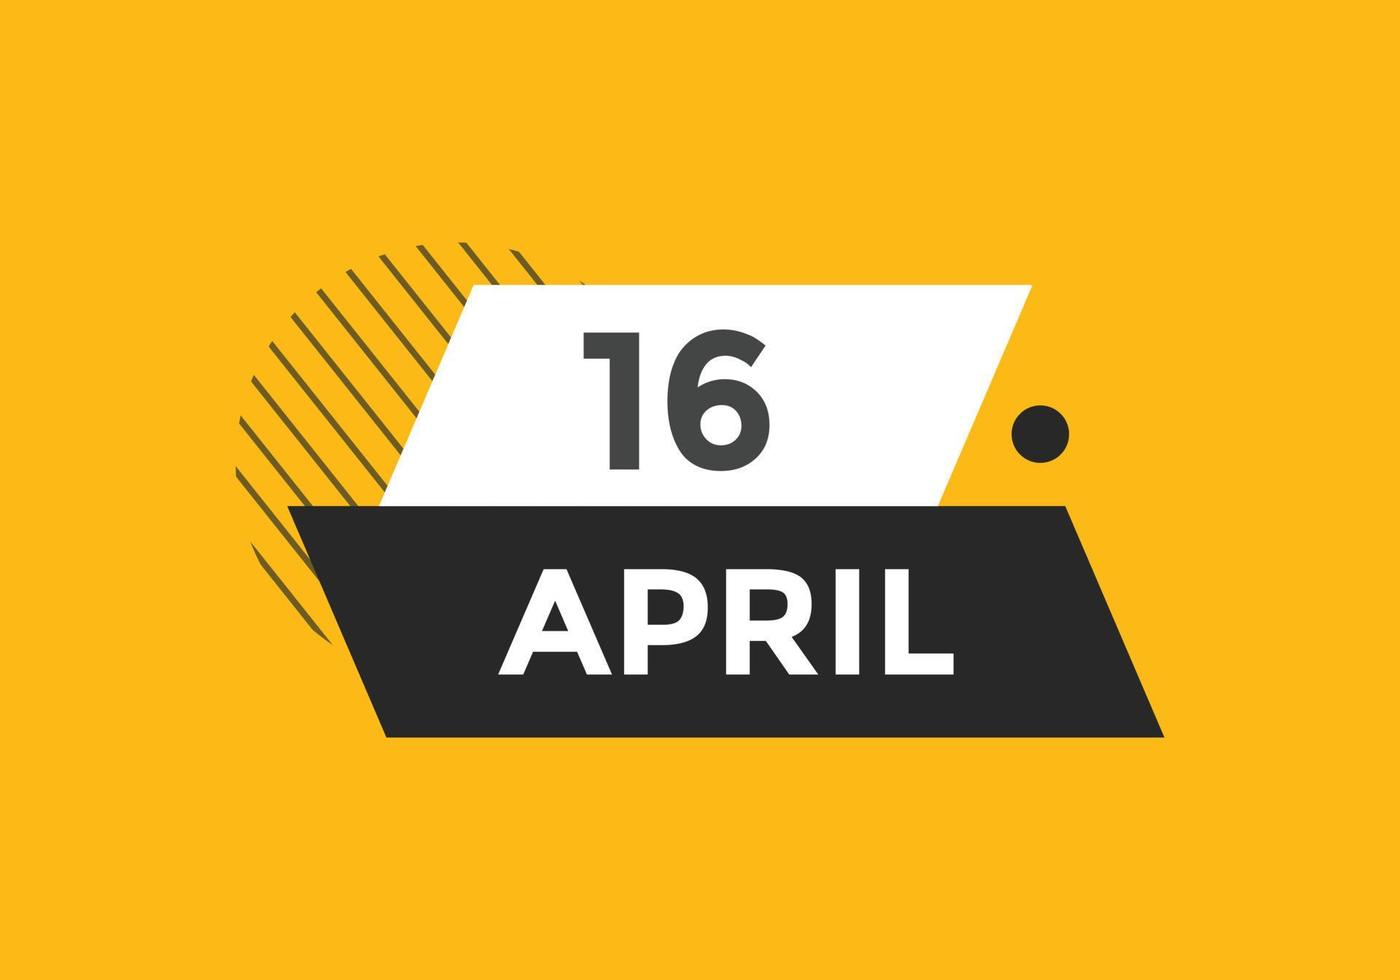 lembrete de calendário de 16 de abril. Modelo de ícone de calendário diário de 16 de abril. modelo de design de ícone de calendário 16 de abril. ilustração vetorial vetor